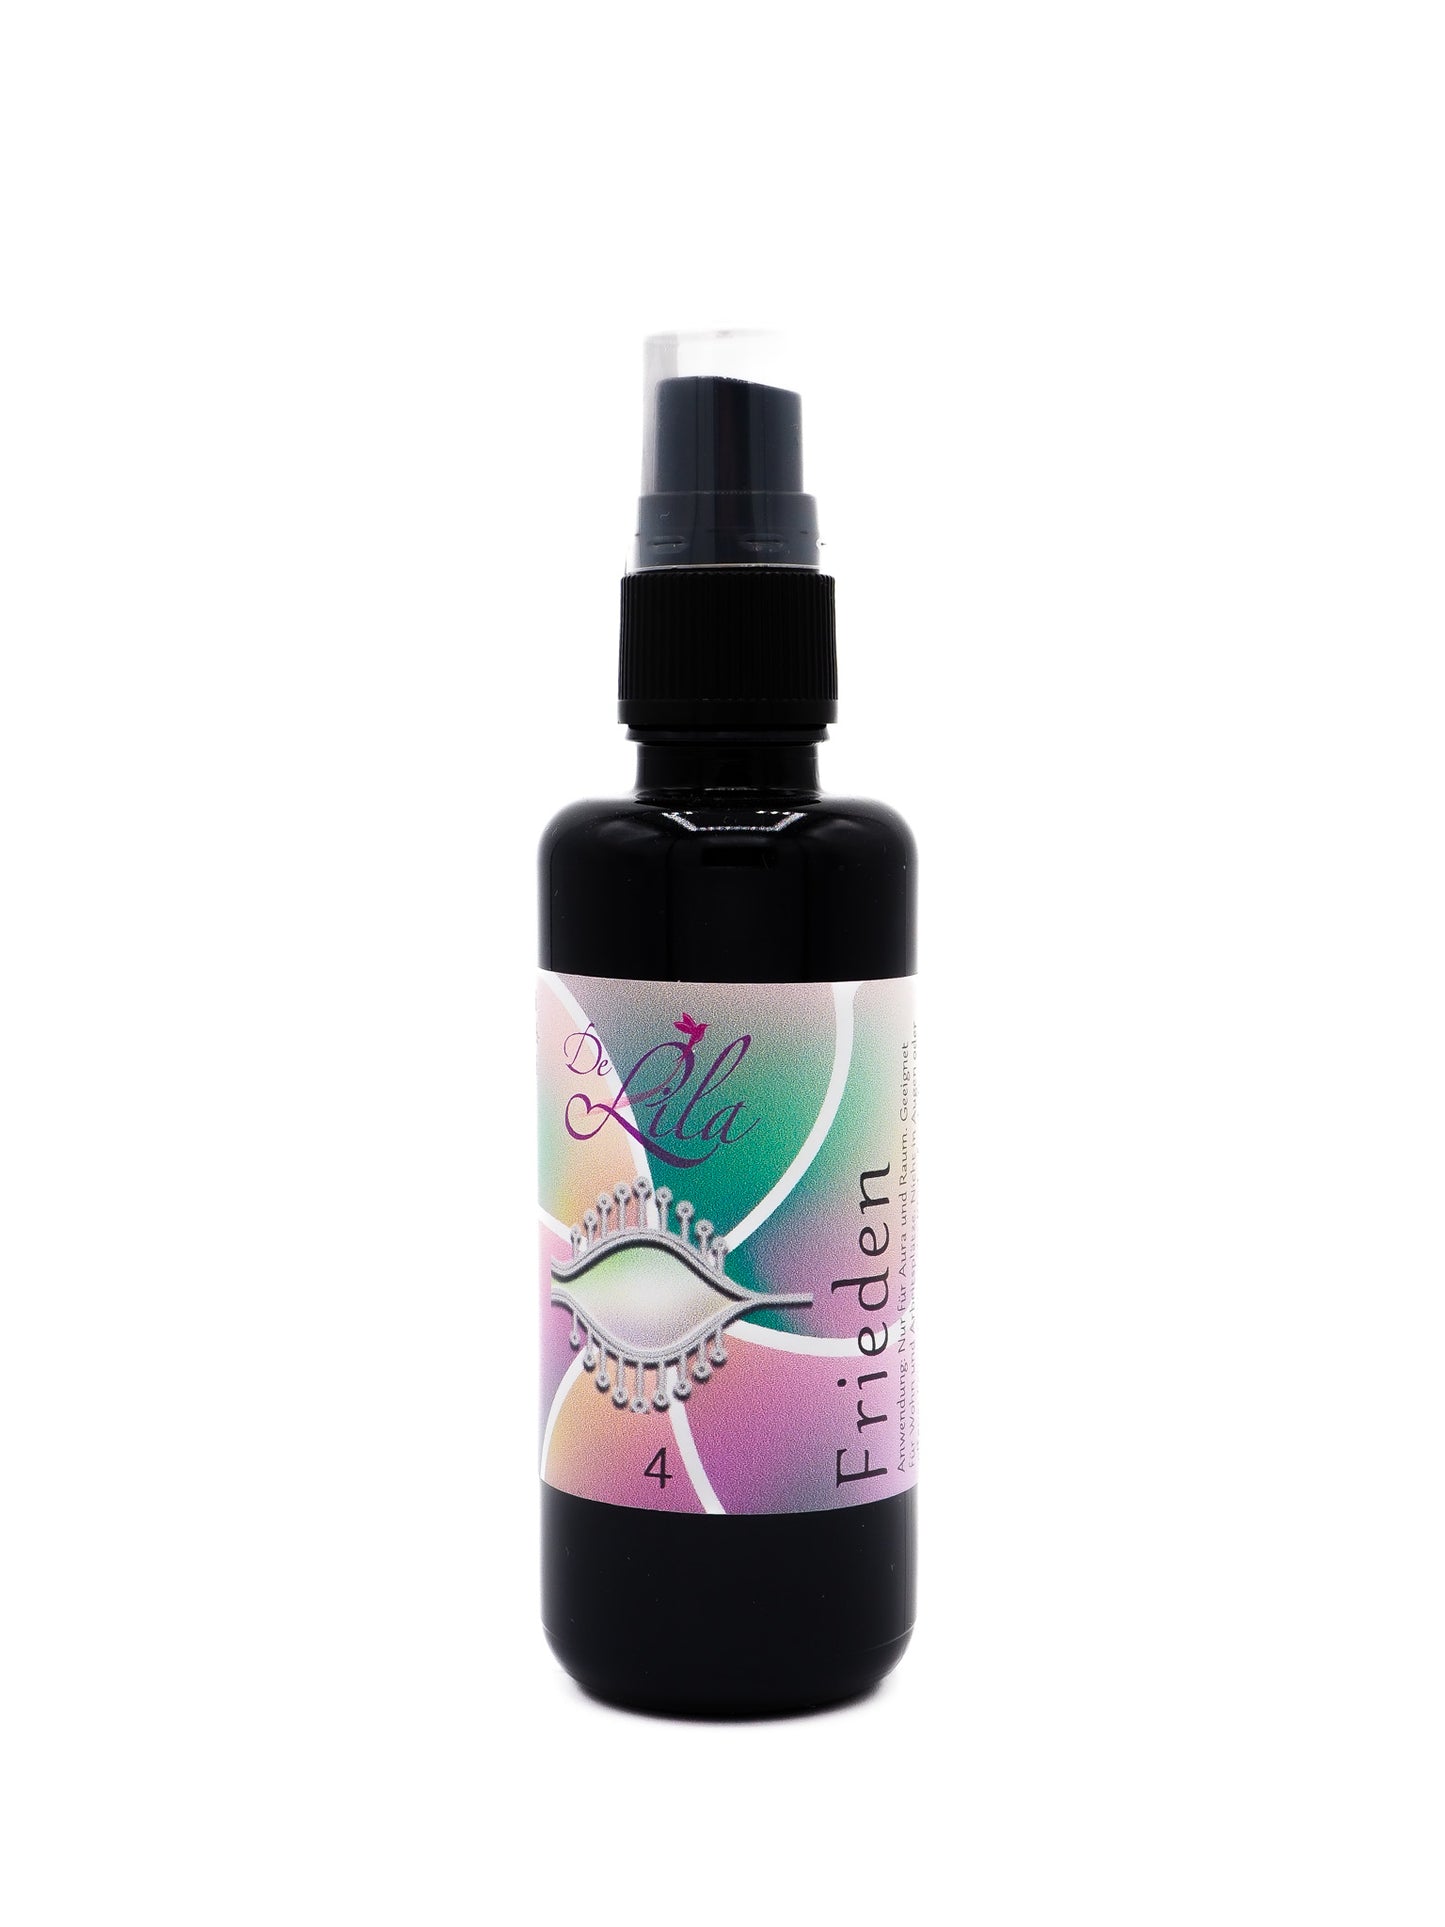 DeLila® Fragrance & Aura Spray - 4 - Peace